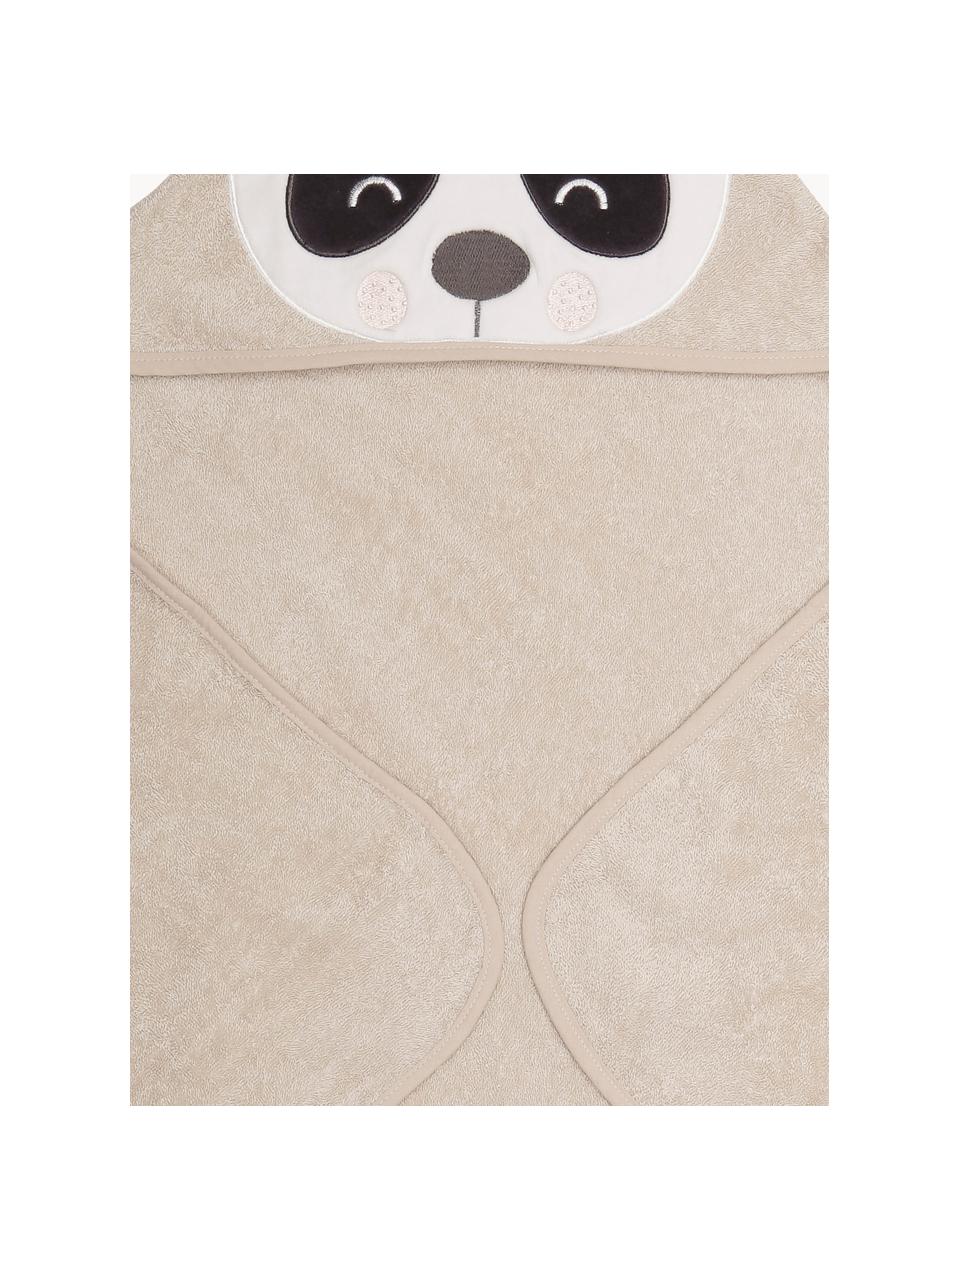 Asciugamano per neonati in cotone organico Panda Penny, 100% cotone organico, Beige chiaro, bianco, antracite, Larg. 80 x Lung. 80 cm